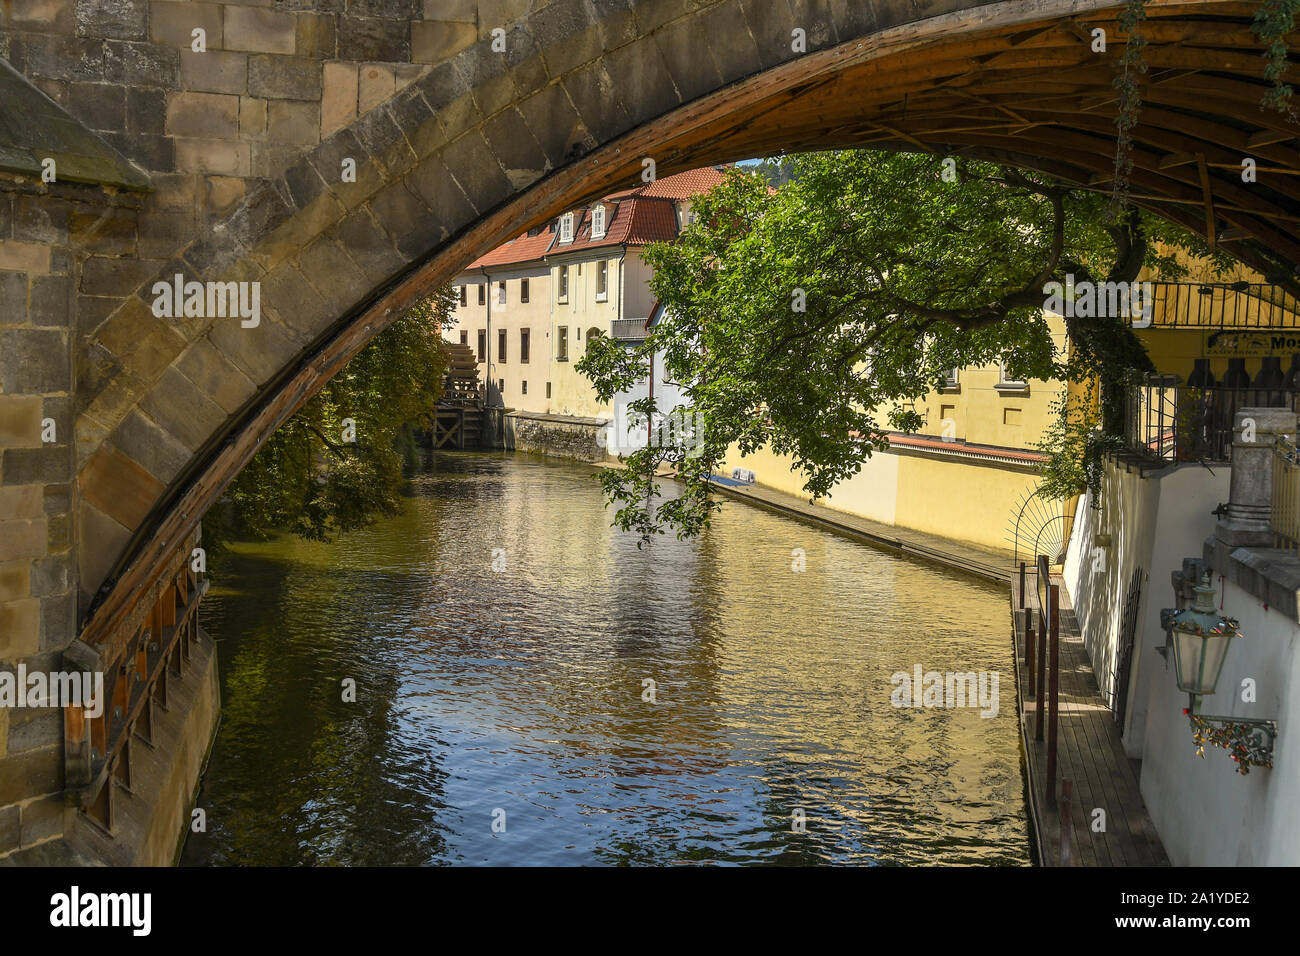 Praga, Repubblica ceca - Luglio 2018: Vista della Certovka incorniciata da un arco di ponte. Si tratta di uno stretto canale che corre attraverso il quartiere minore Foto Stock